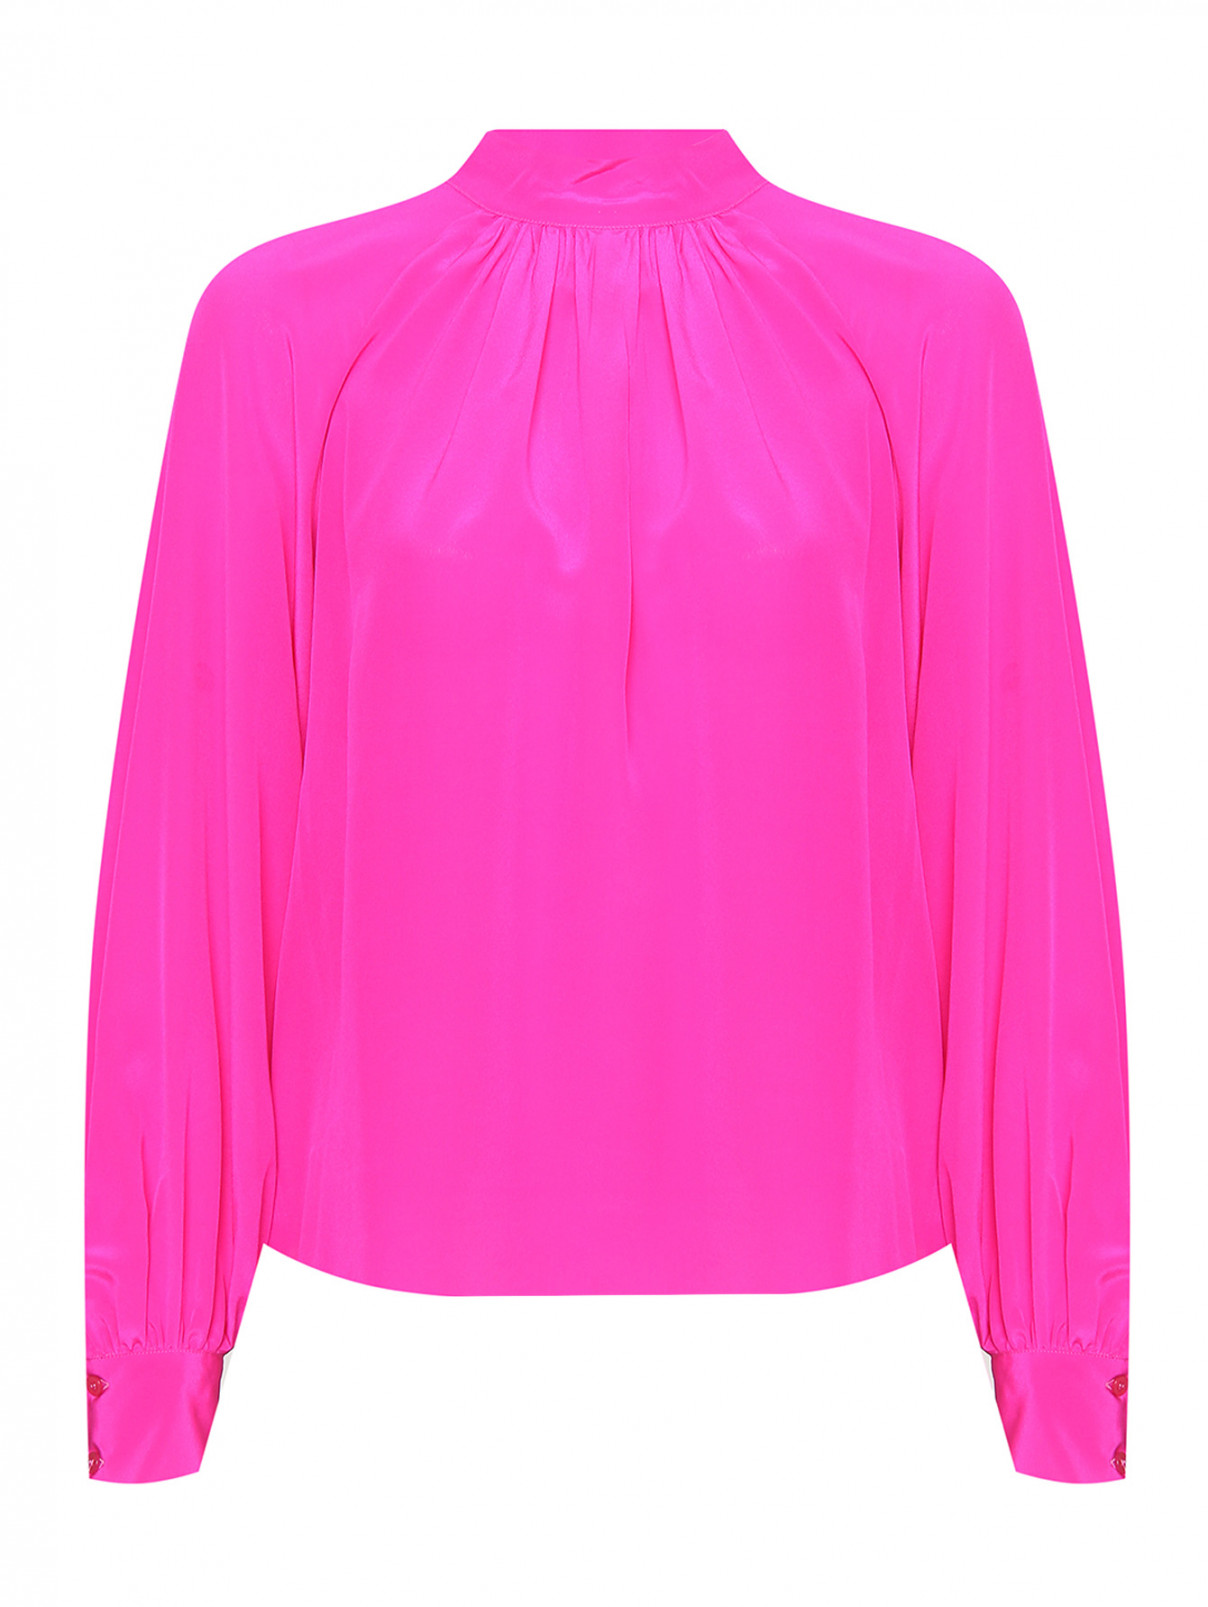 Однотонная блуза из шелка Liviana Conti  –  Общий вид  – Цвет:  Фиолетовый